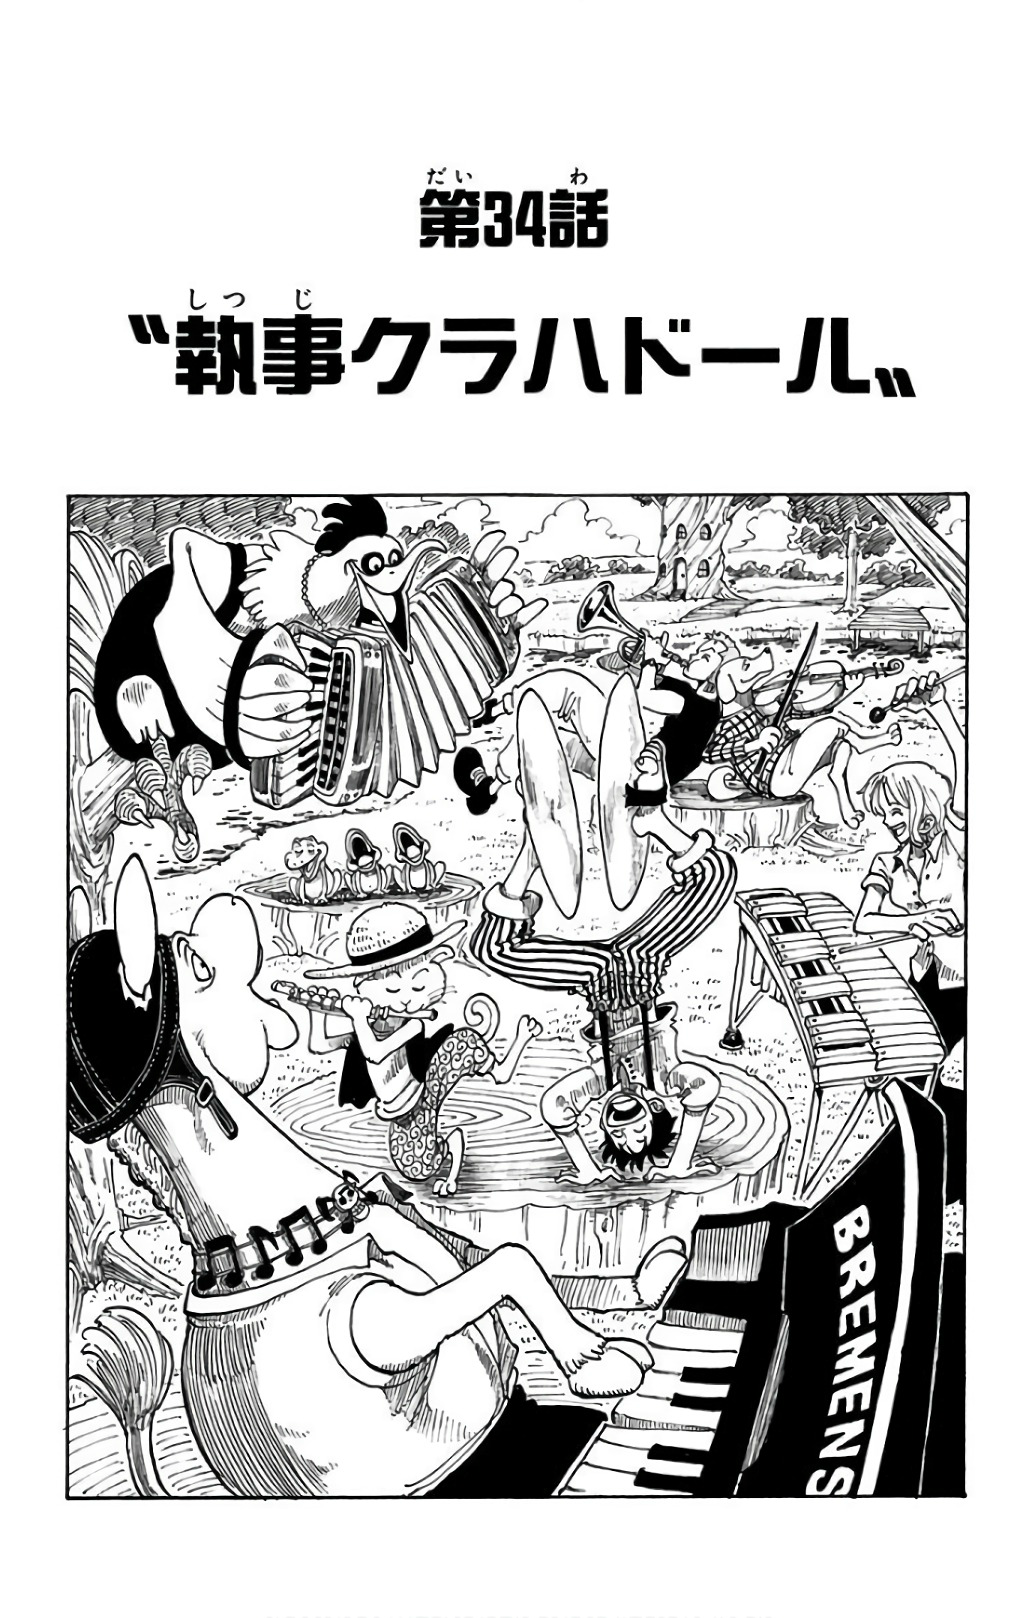 Chapter 34 | One Piece Wiki | Fandom